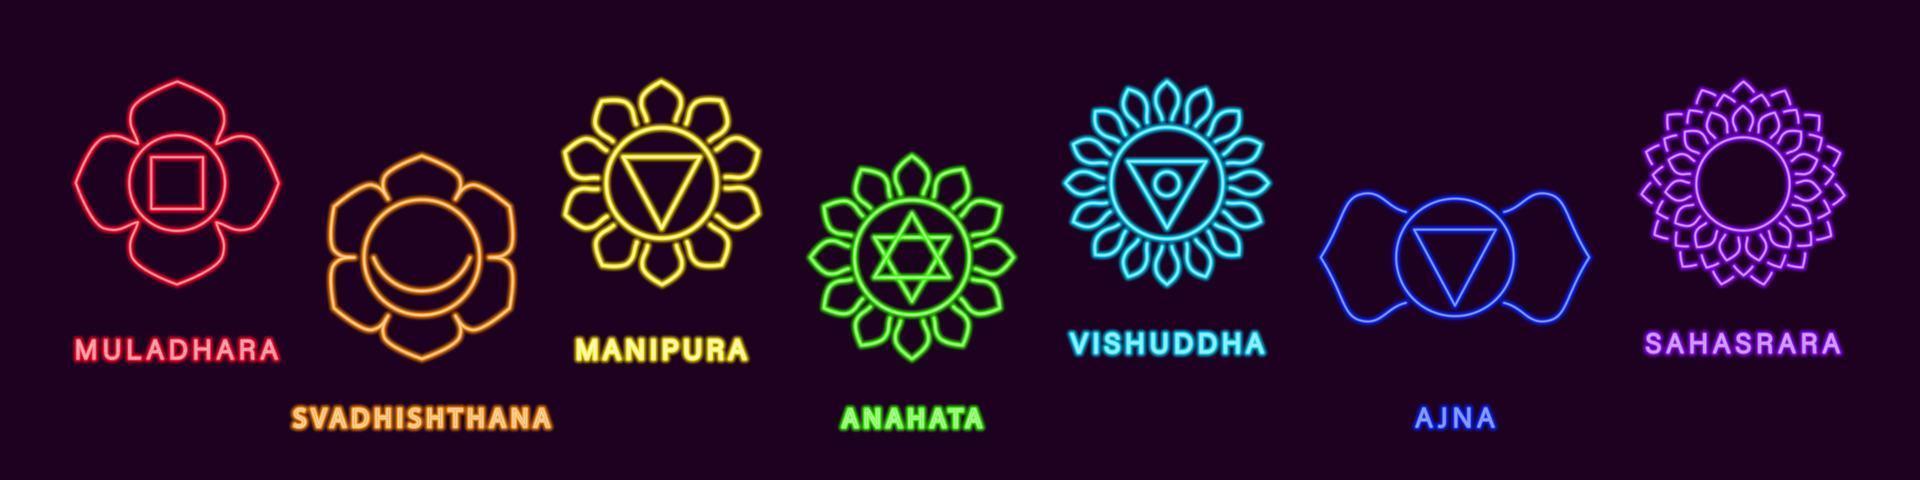 neon yoga sakral chakras set. lila glödande muladhara och hälsa natur ljus anahata andlig läka svadhistana med sinne värmande strålar manipura gjord med vita linjer på svart vektorutrymme vektor